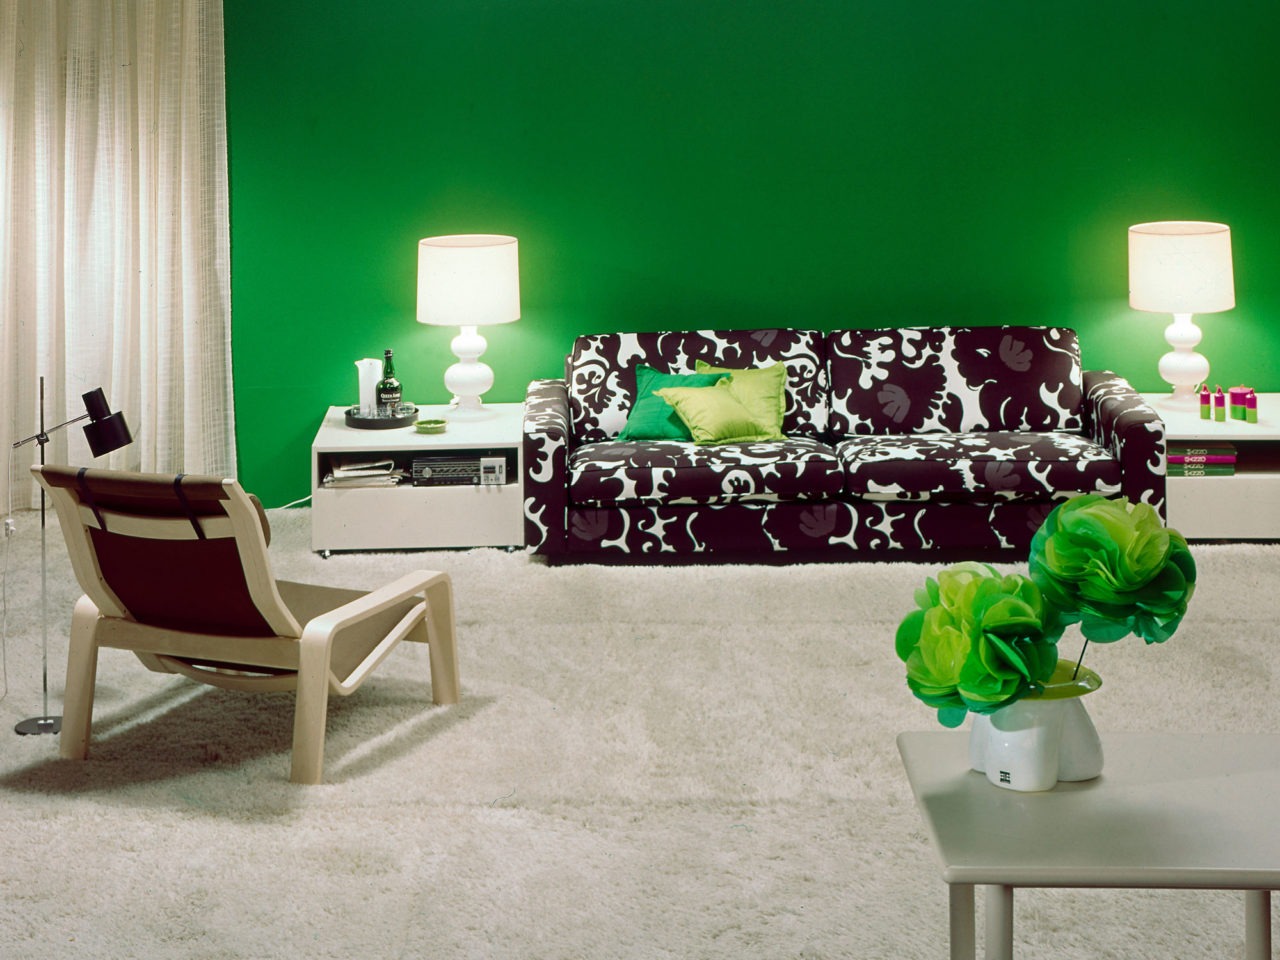 Sofá MIX con estampado en blanco y negro en habitación con detalles en blanco, elementos decorativos y pared verde.